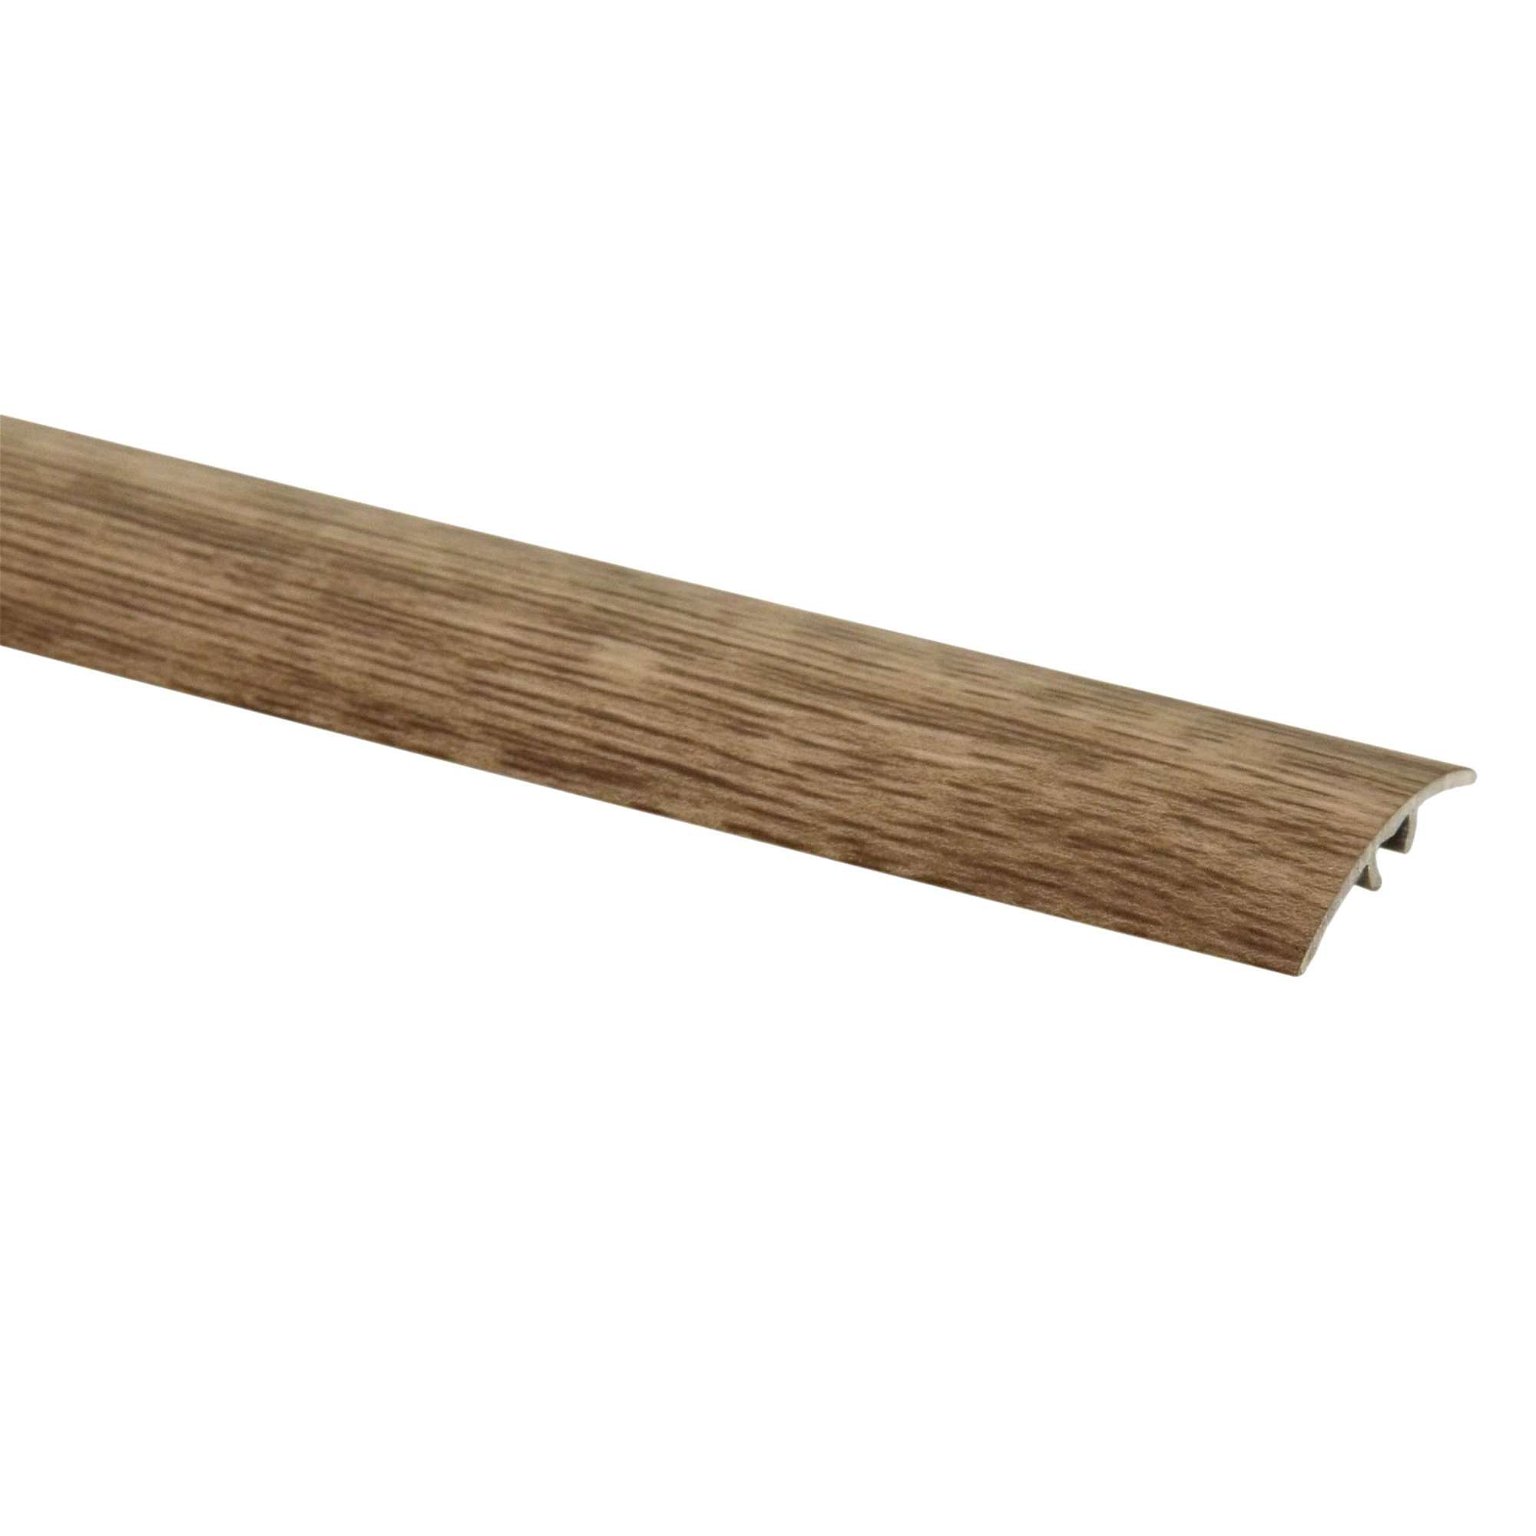 Aliumininė grindų juostelė SM1 W3, sidabrinio ąžuolo sp., 30 mm pločio, 93 cm ilgio